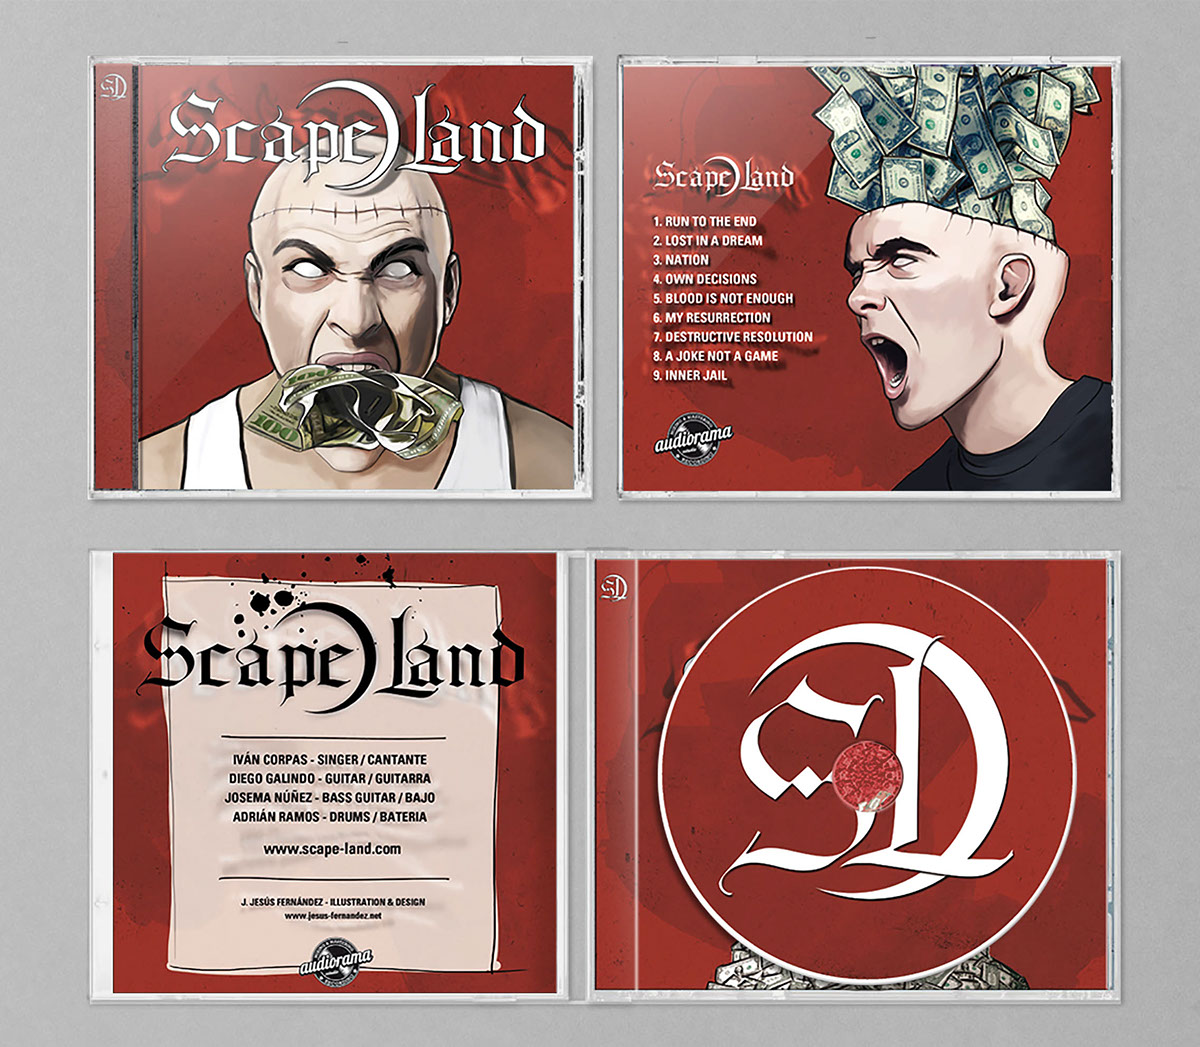 cd- artwork scape-land rock